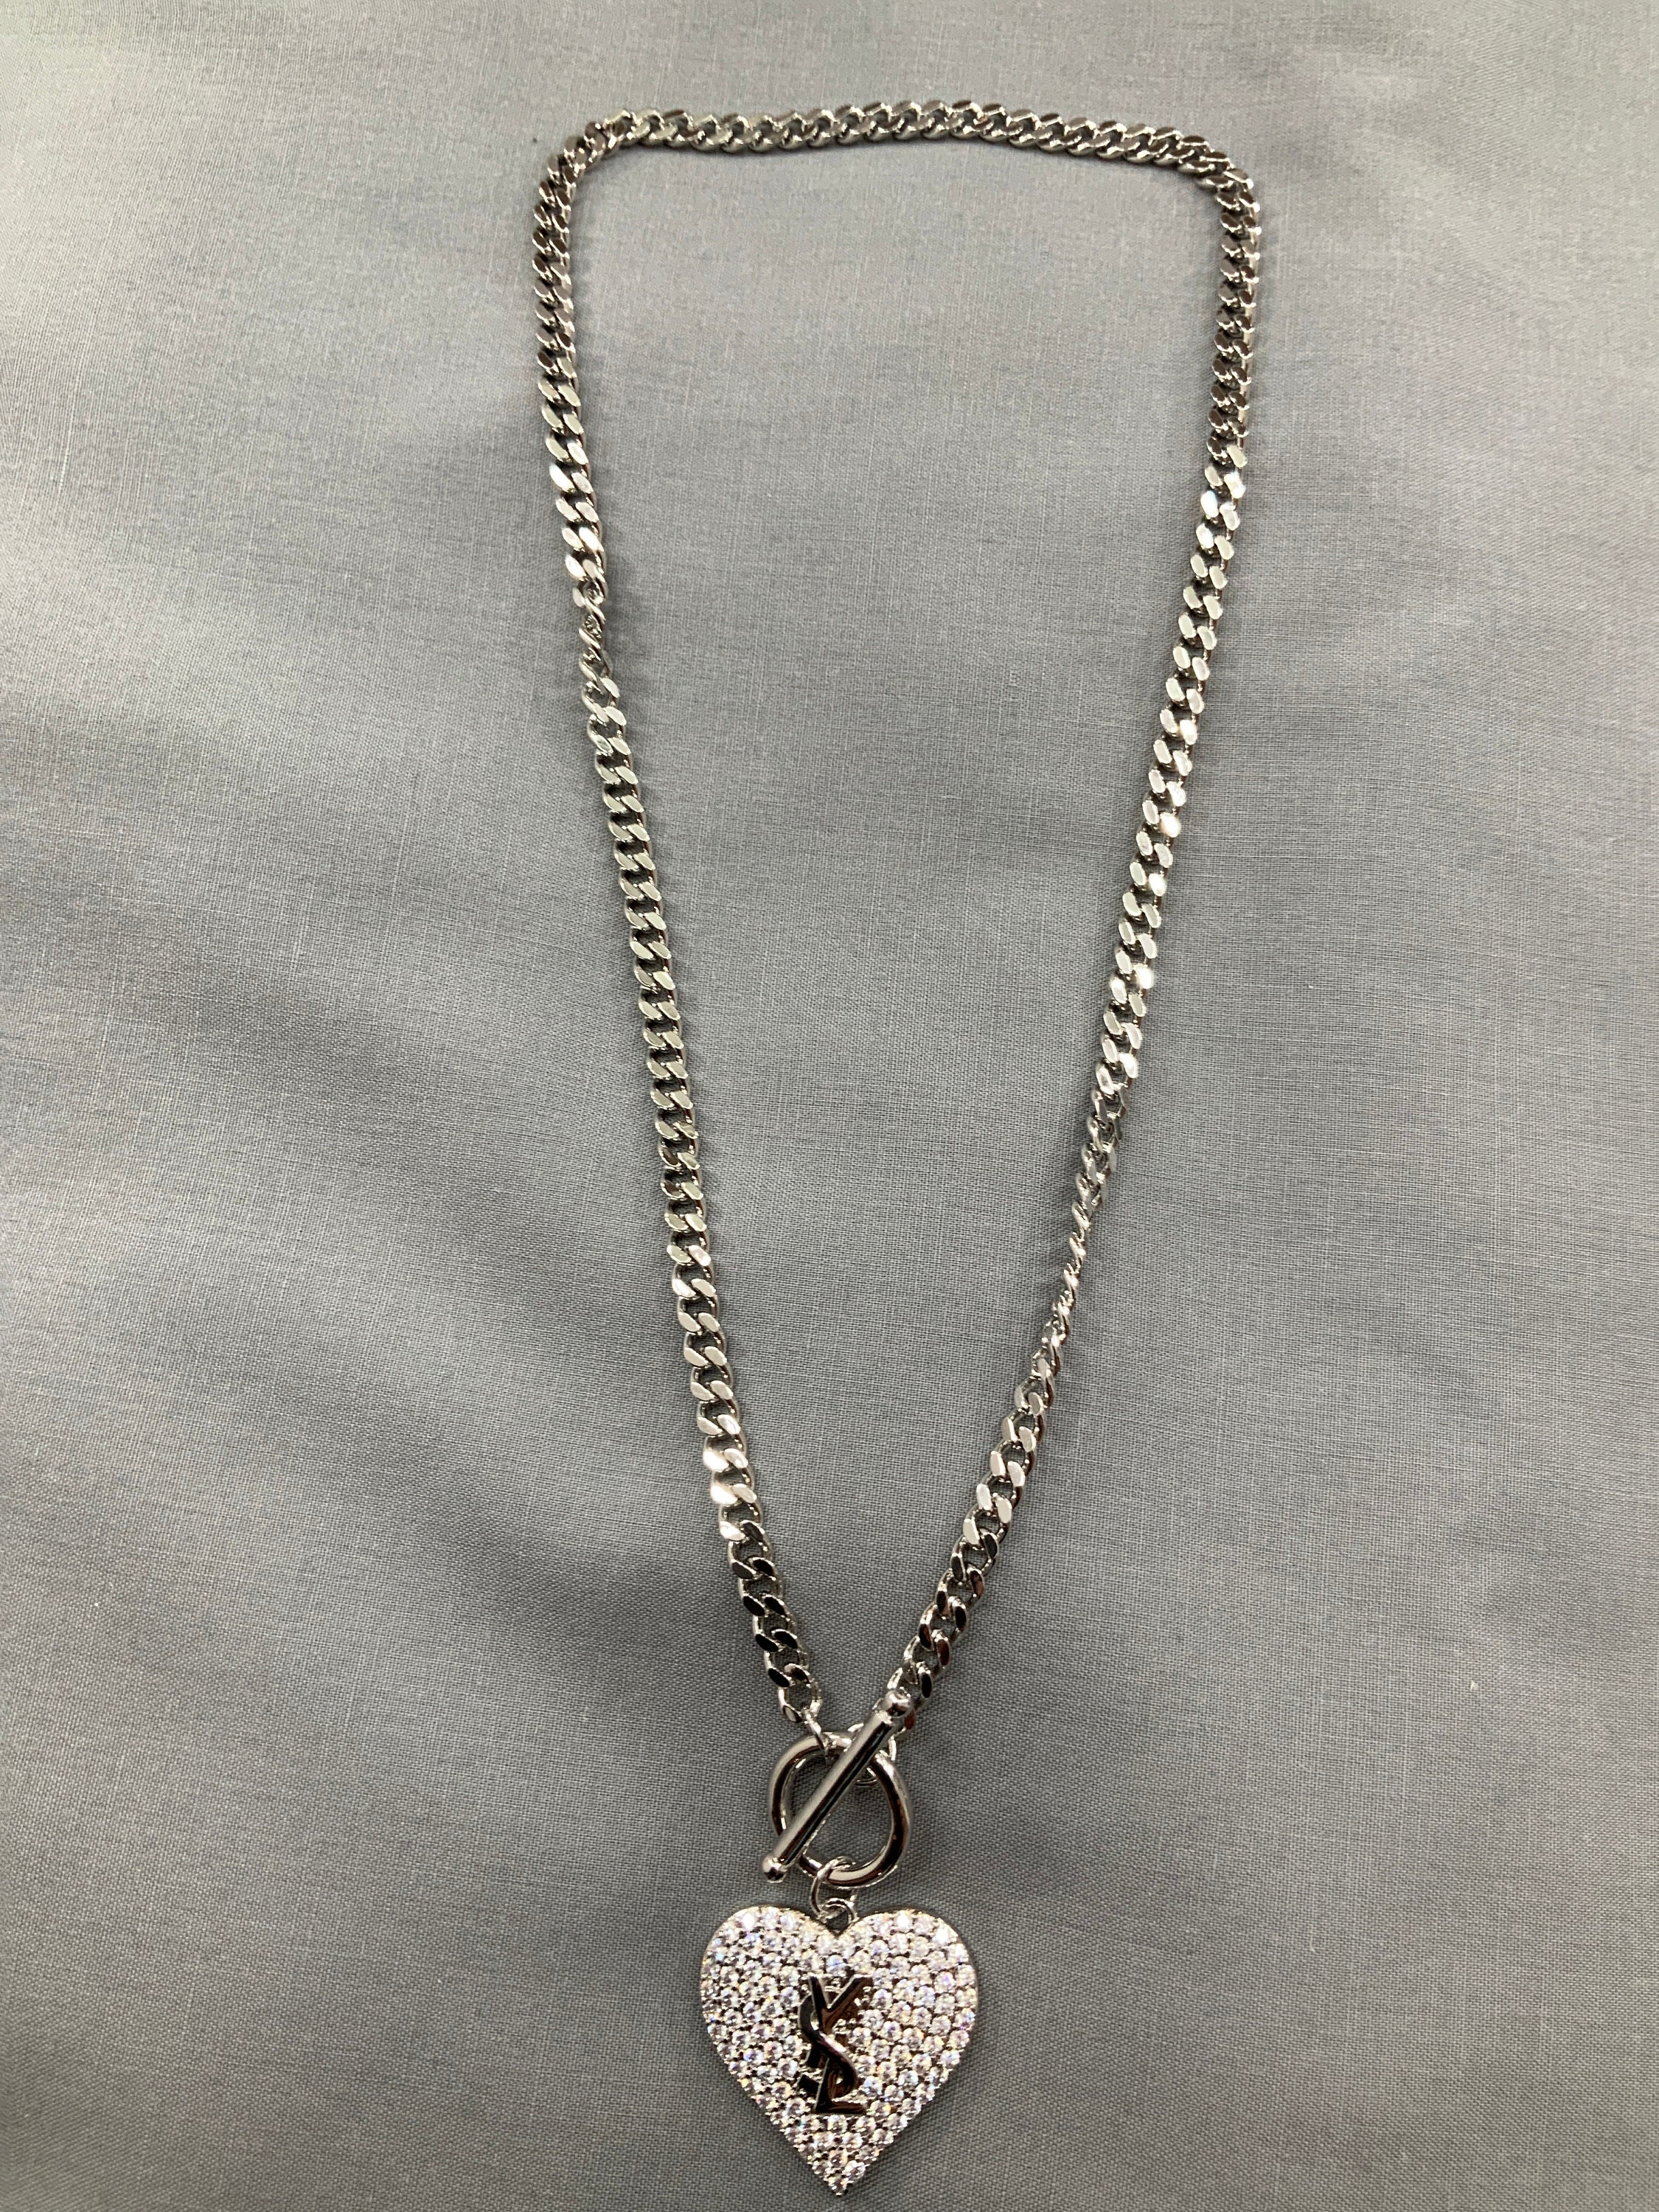 Shop Louis Vuitton Unisex Street Style Plain Silver Logo Necklaces &  Chokers (LV DOVE NECKLACE, M00957) by Mikrie